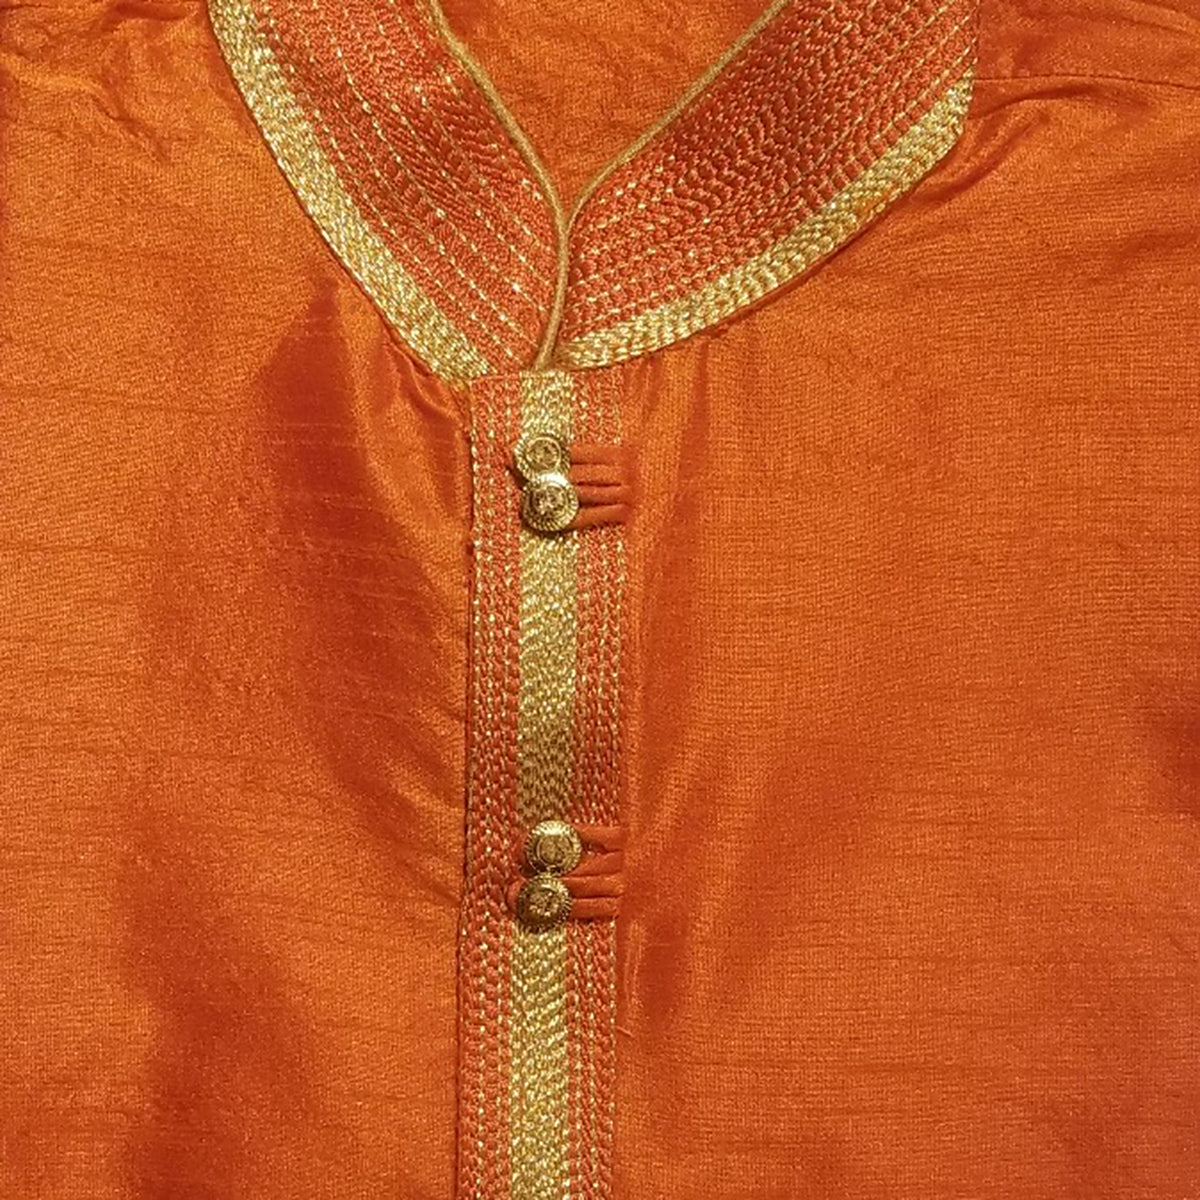 DK Orange or Marigold Men Kurta - Vintage India NYC